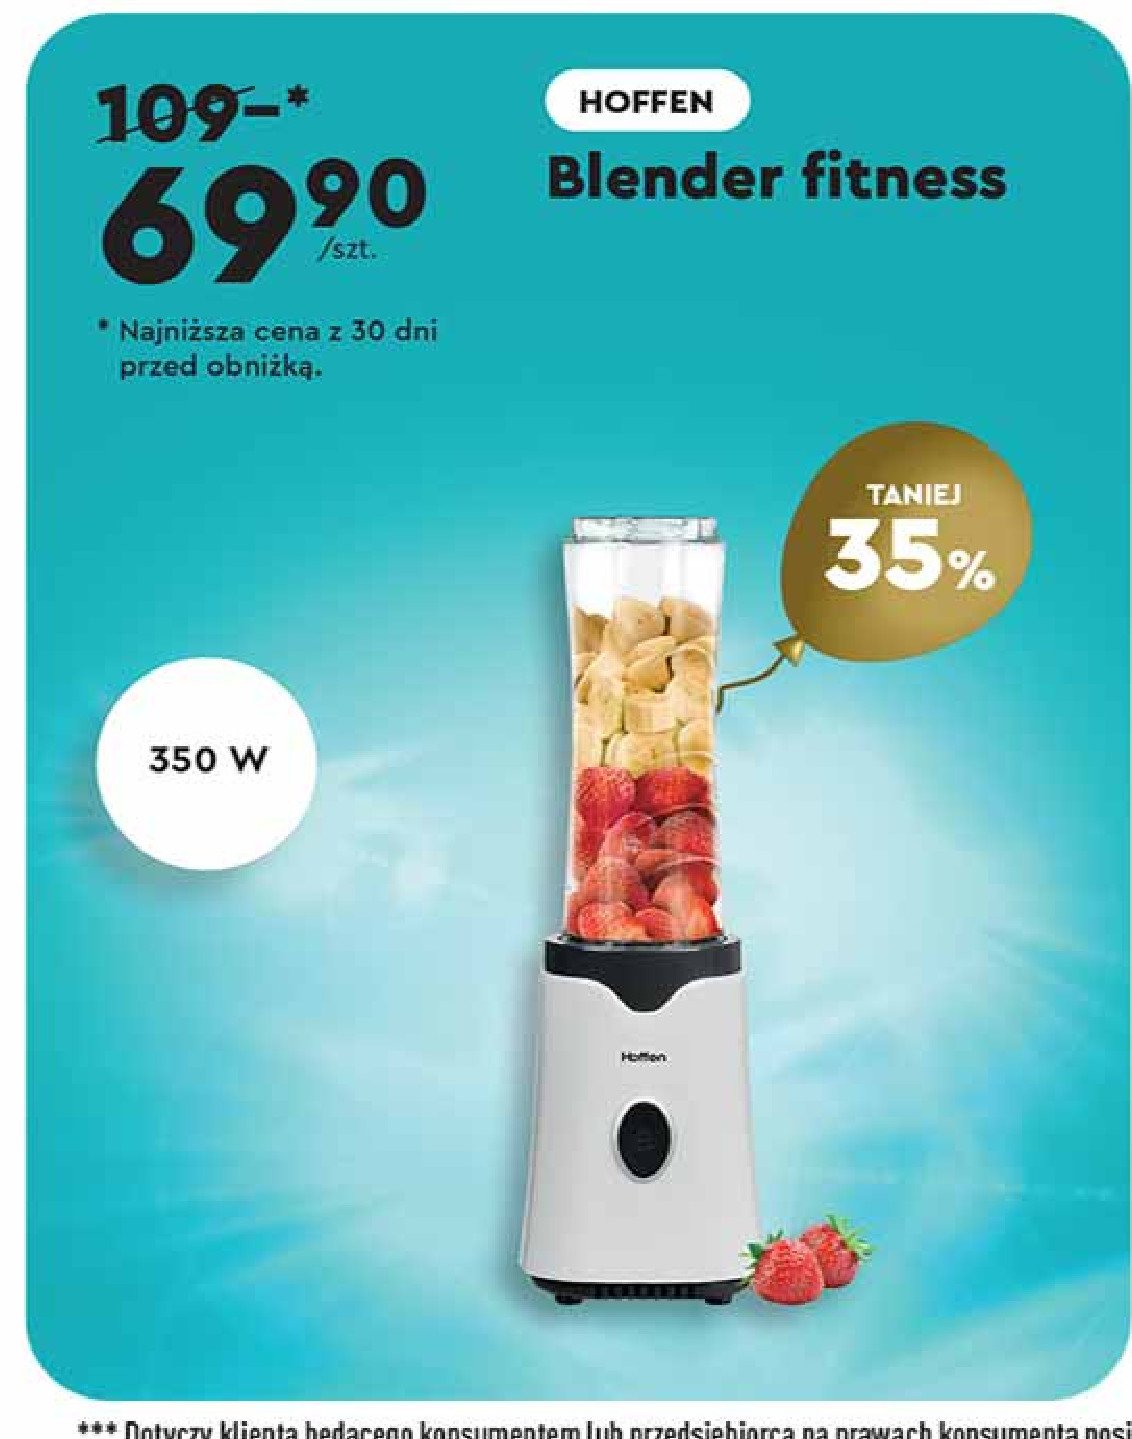 Blender fitness Hoffen promocja